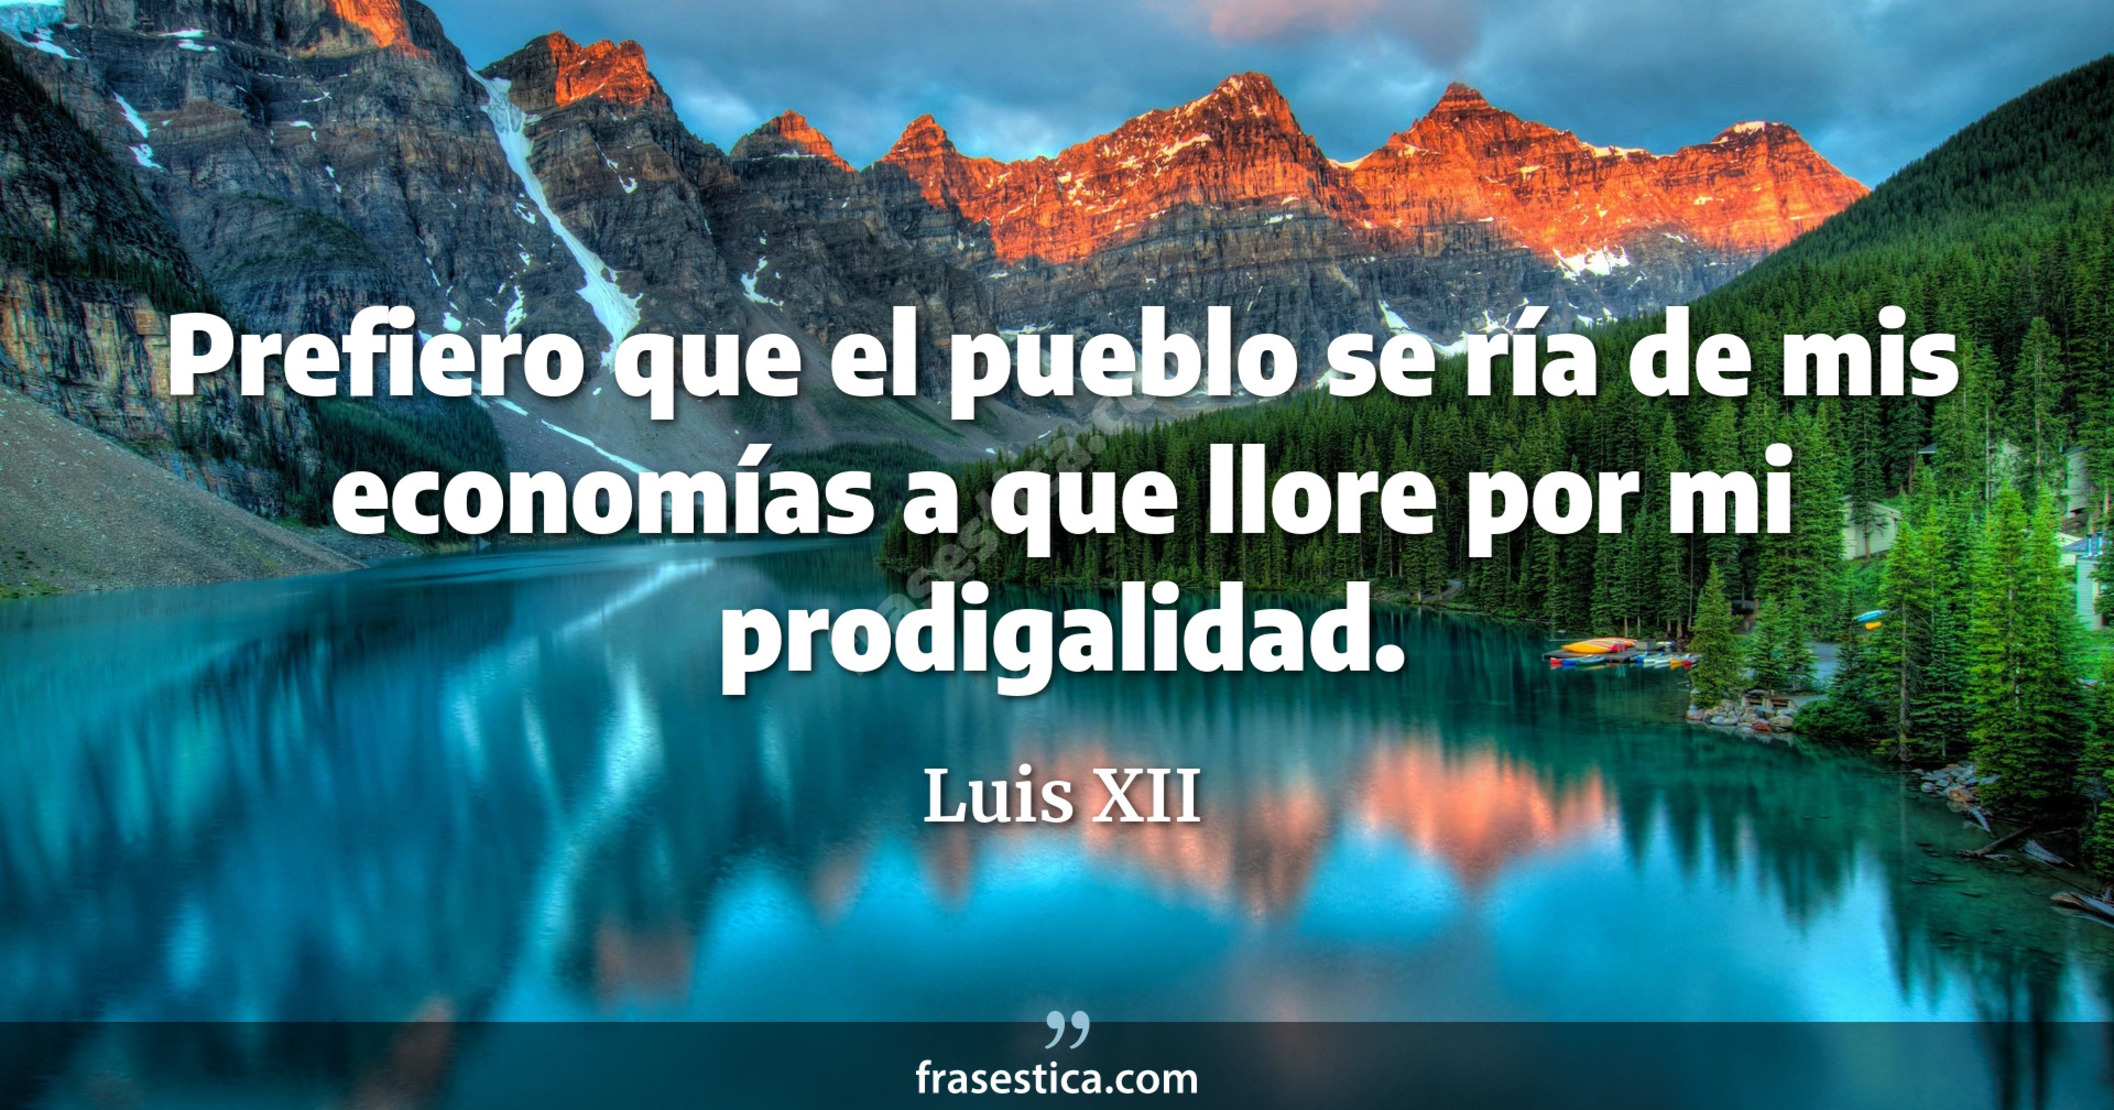 Prefiero que el pueblo se ría de mis economías a que llore por mi prodigalidad. - Luis XII